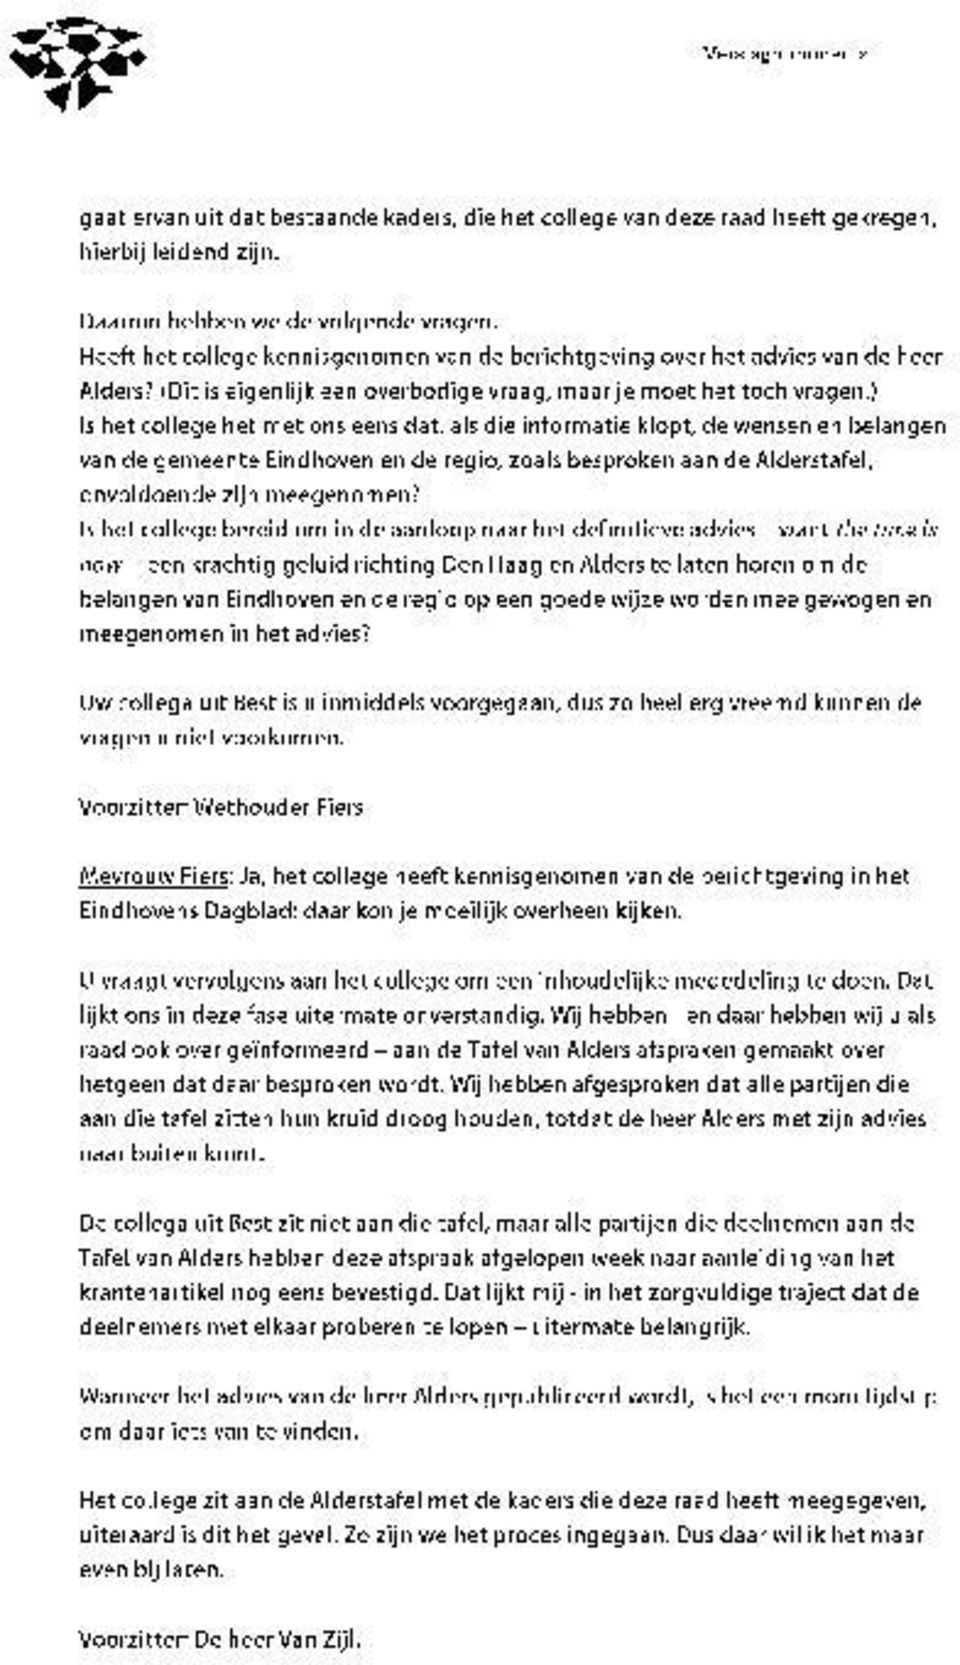 ) Is het college het met ons eens dat, als die informatie klopt, de wensen en belangen van de gemeente Eindhoven en de regio, zoals besproken aan de Alderstafel, onvoldoende zijn meegenomen?